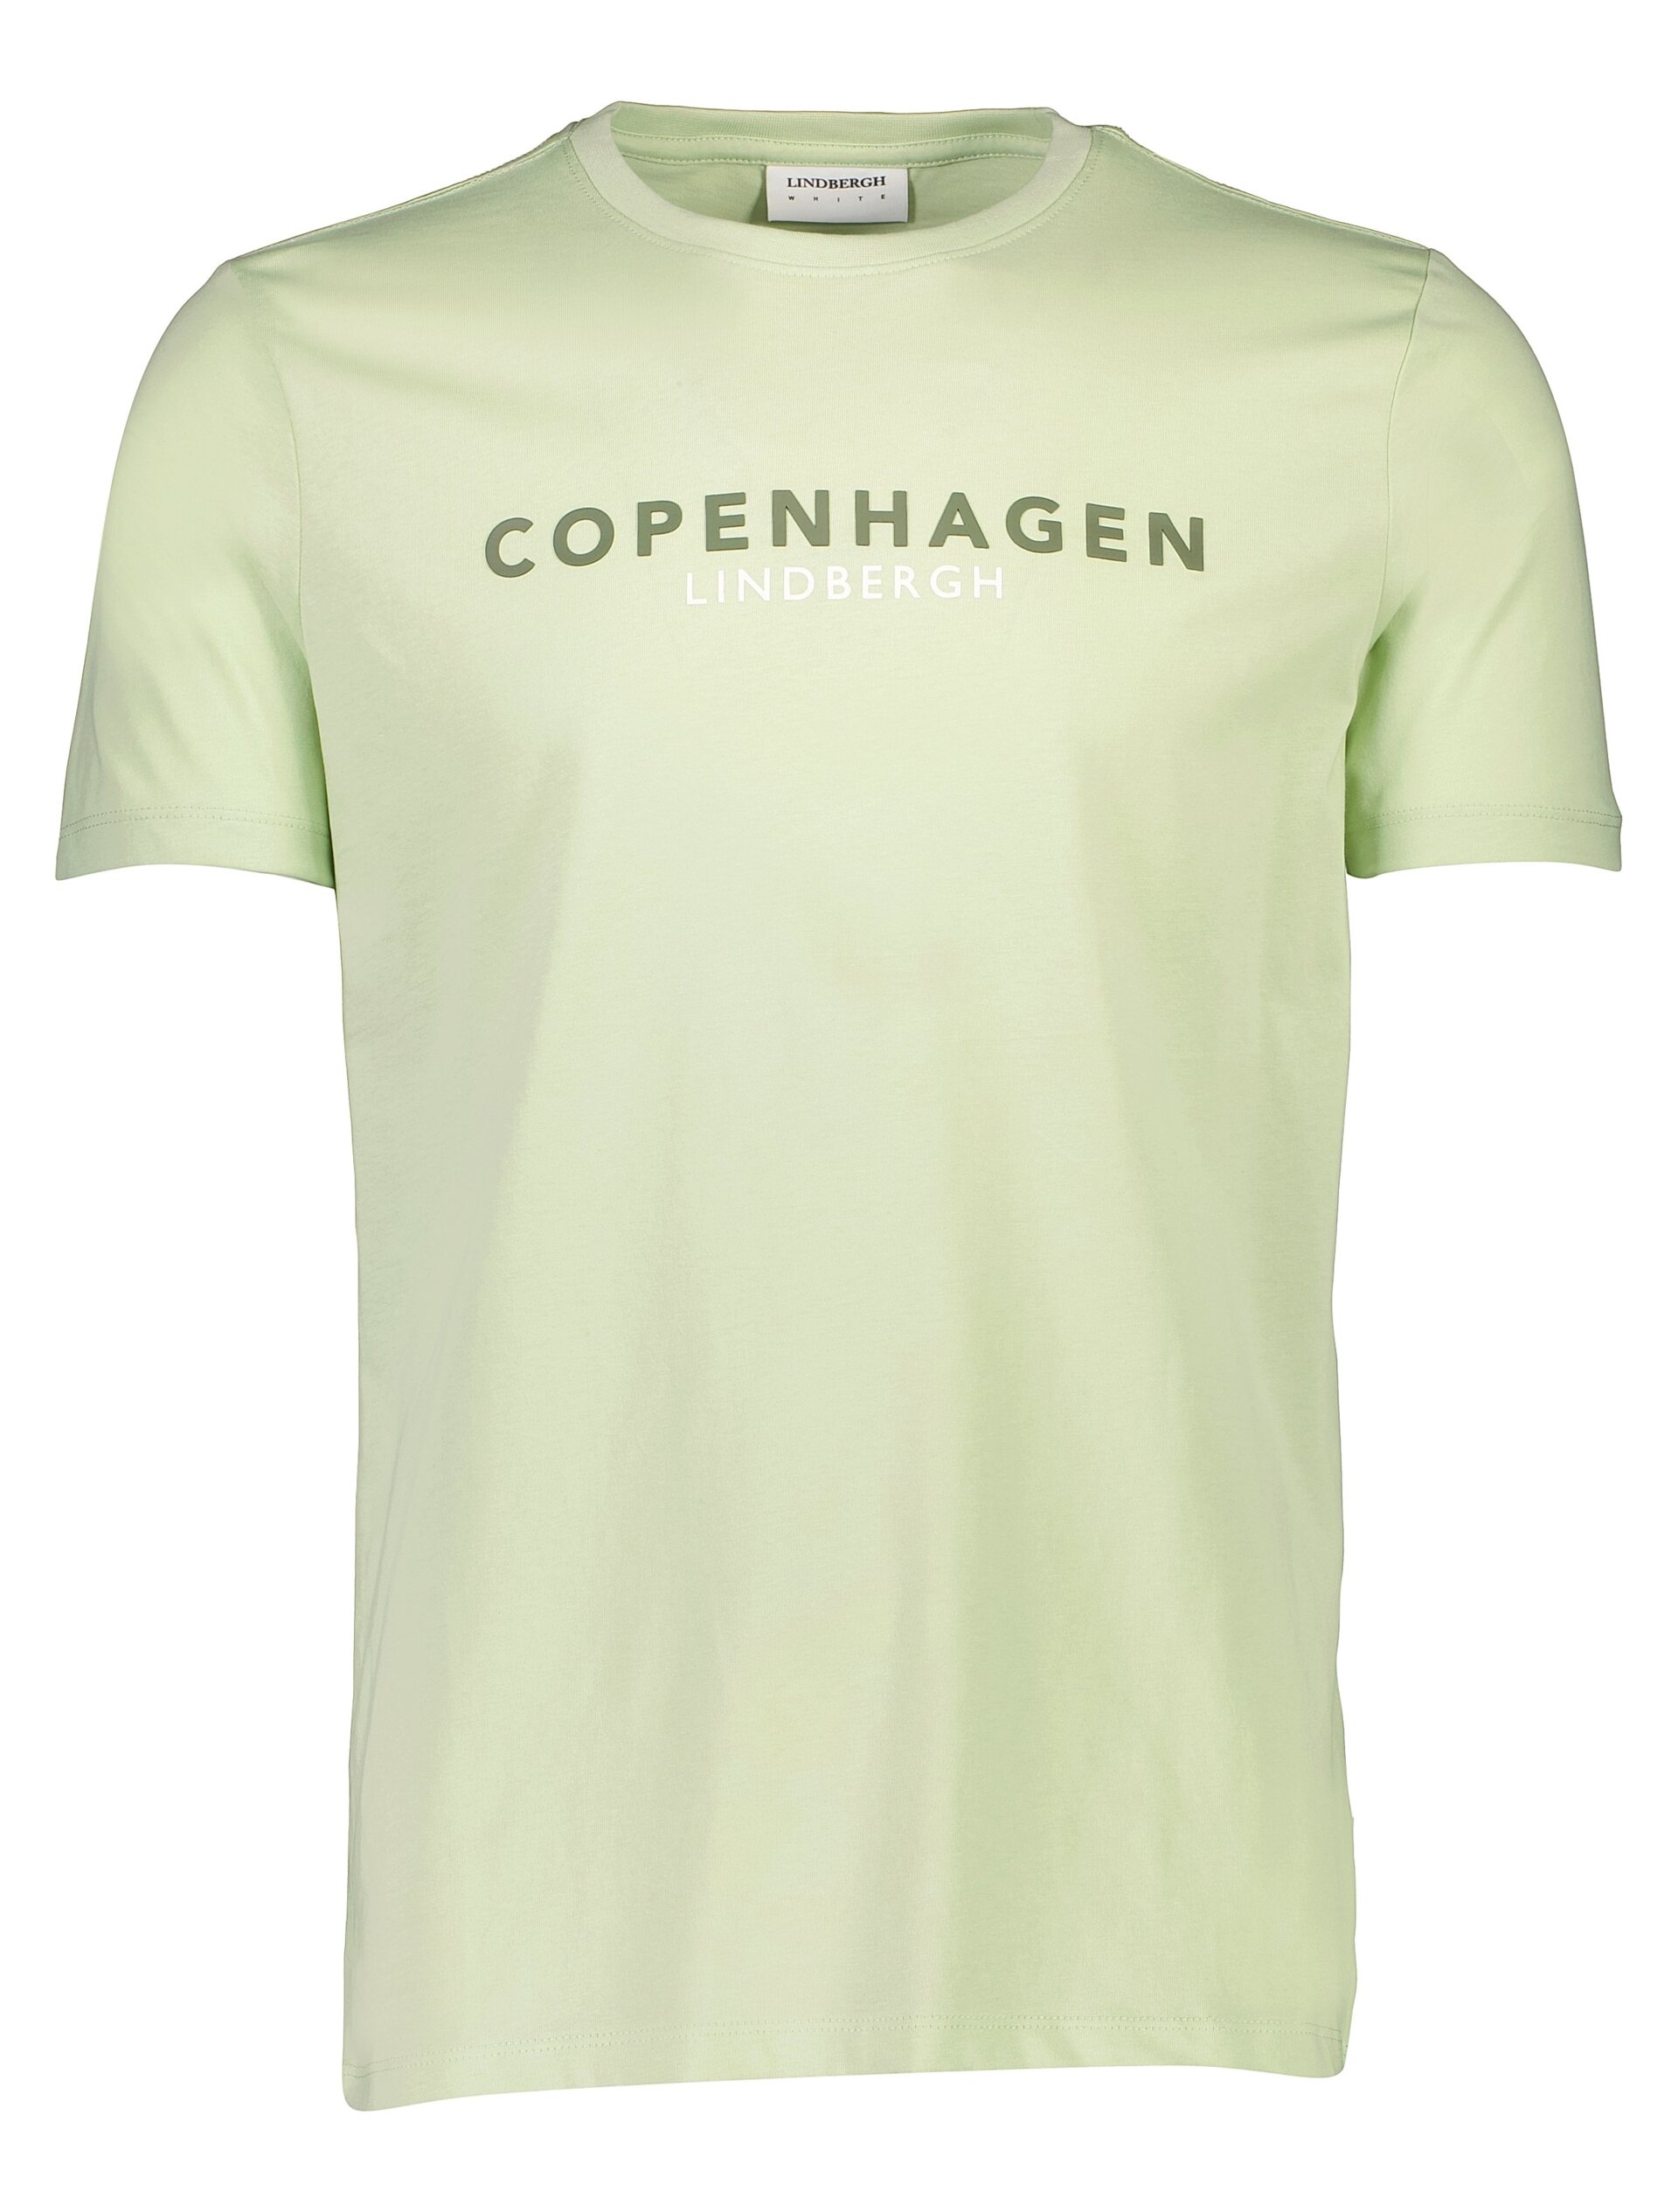 Lindbergh T-shirt groen / mint 224